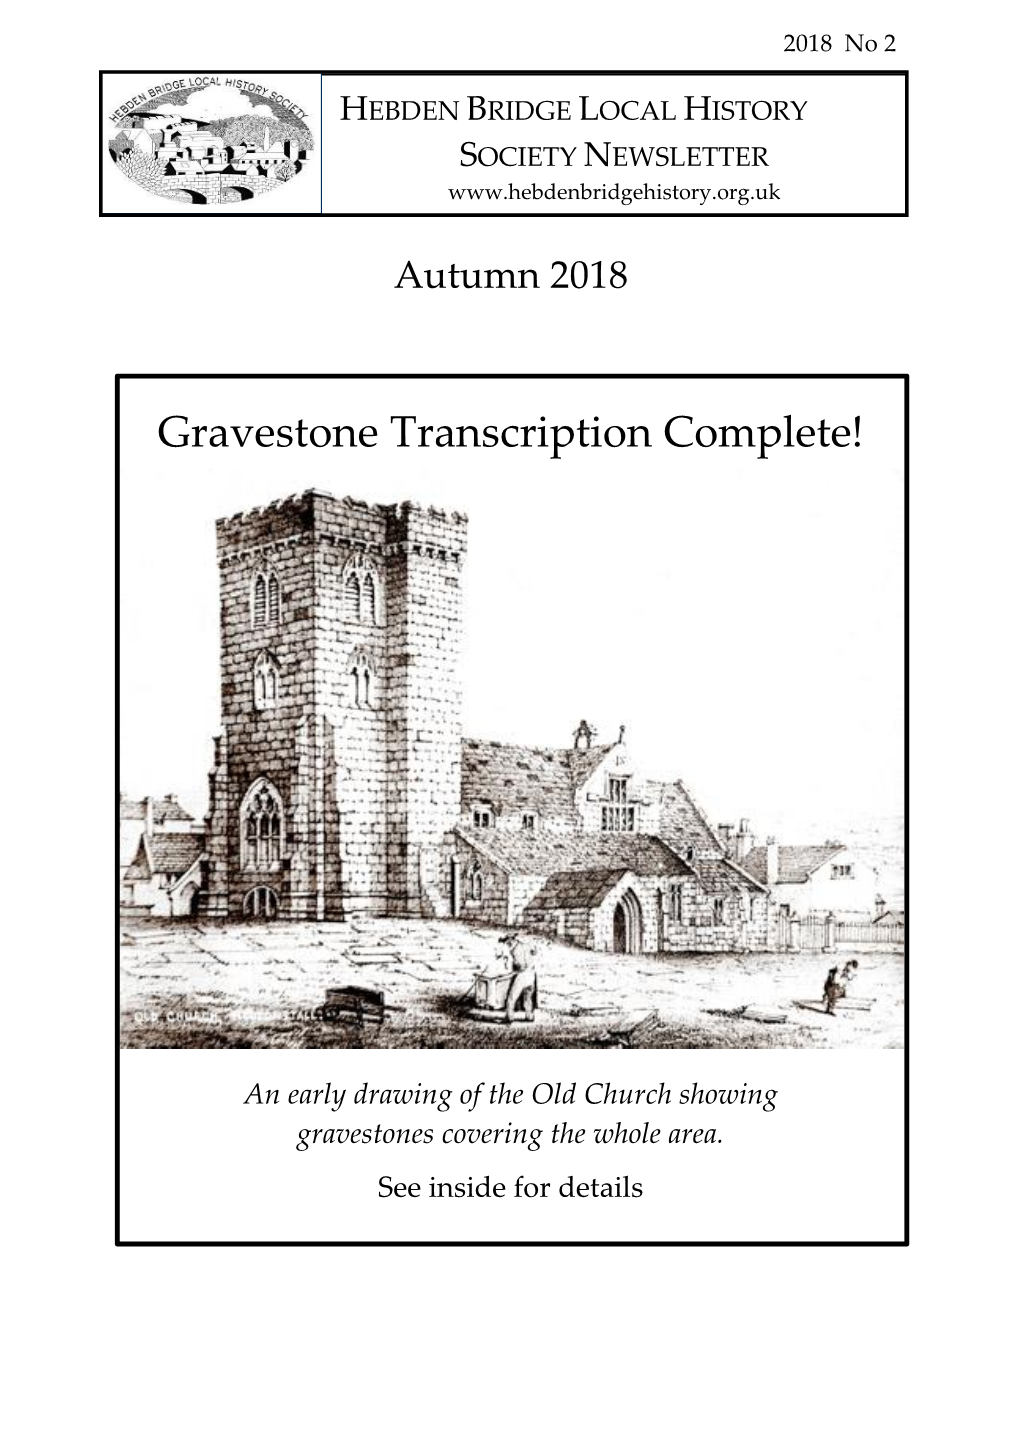 Gravestone Transcription Complete!